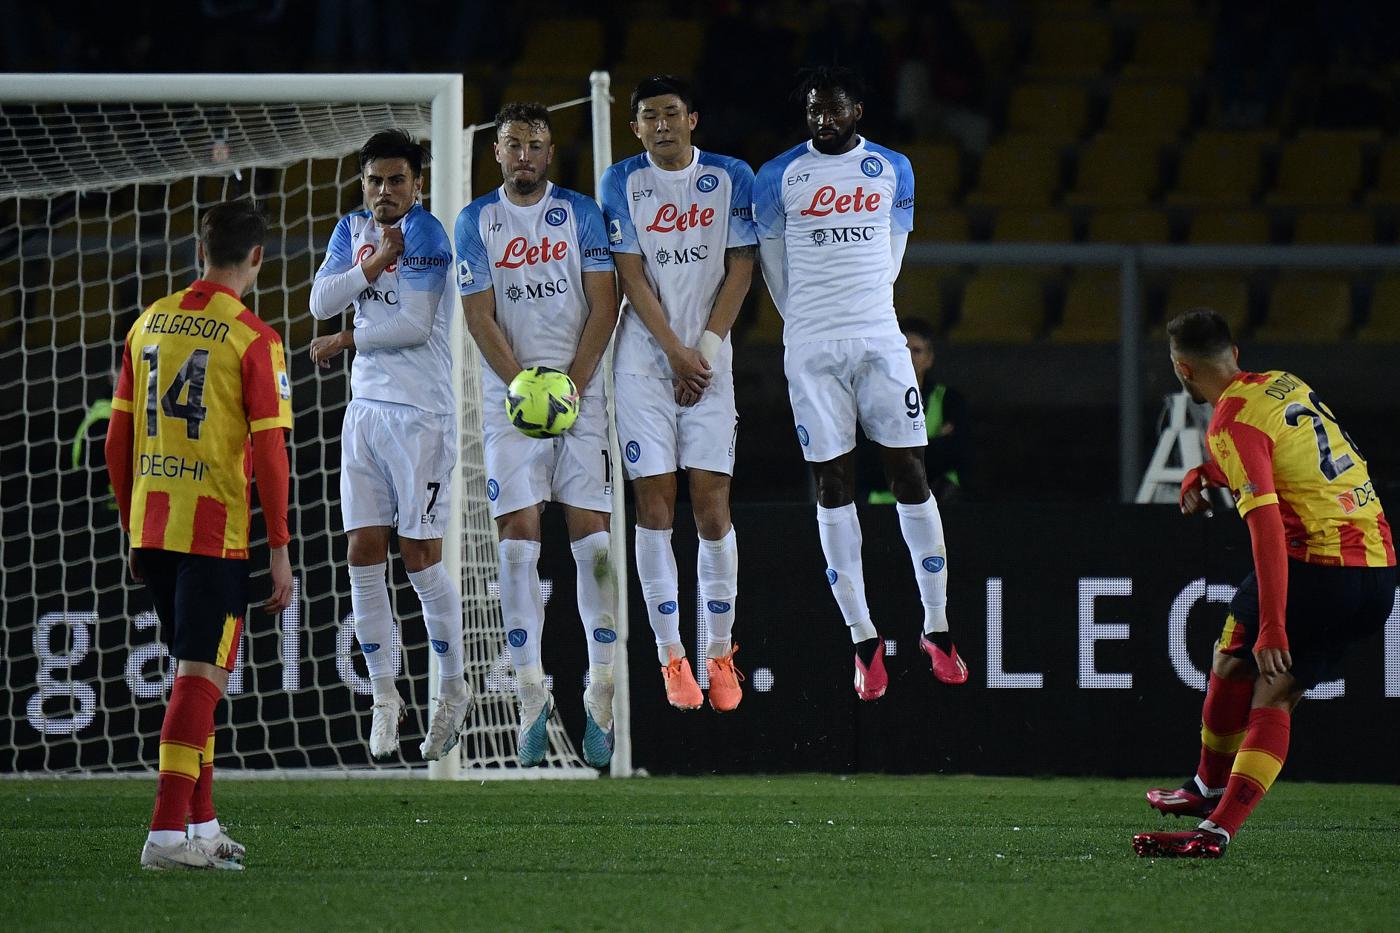 Lecce gegen Napoli - 1:2. Italienische Meisterschaft, 29. Runde. Spielbericht, Statistik.